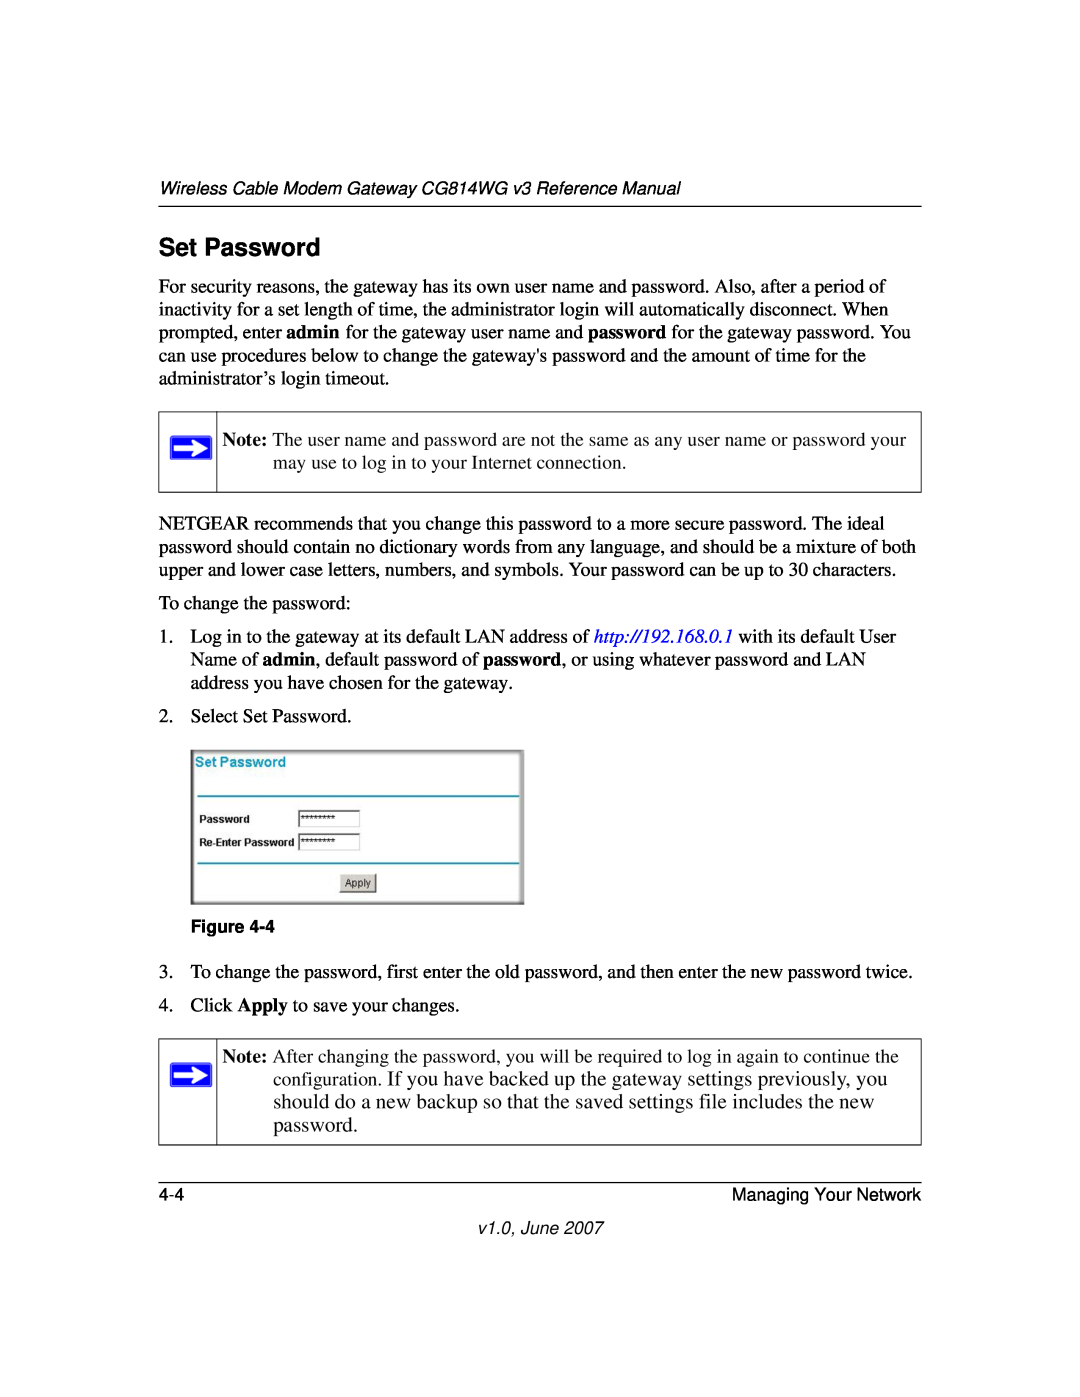 NETGEAR CG814WG V3 manual Set Password 